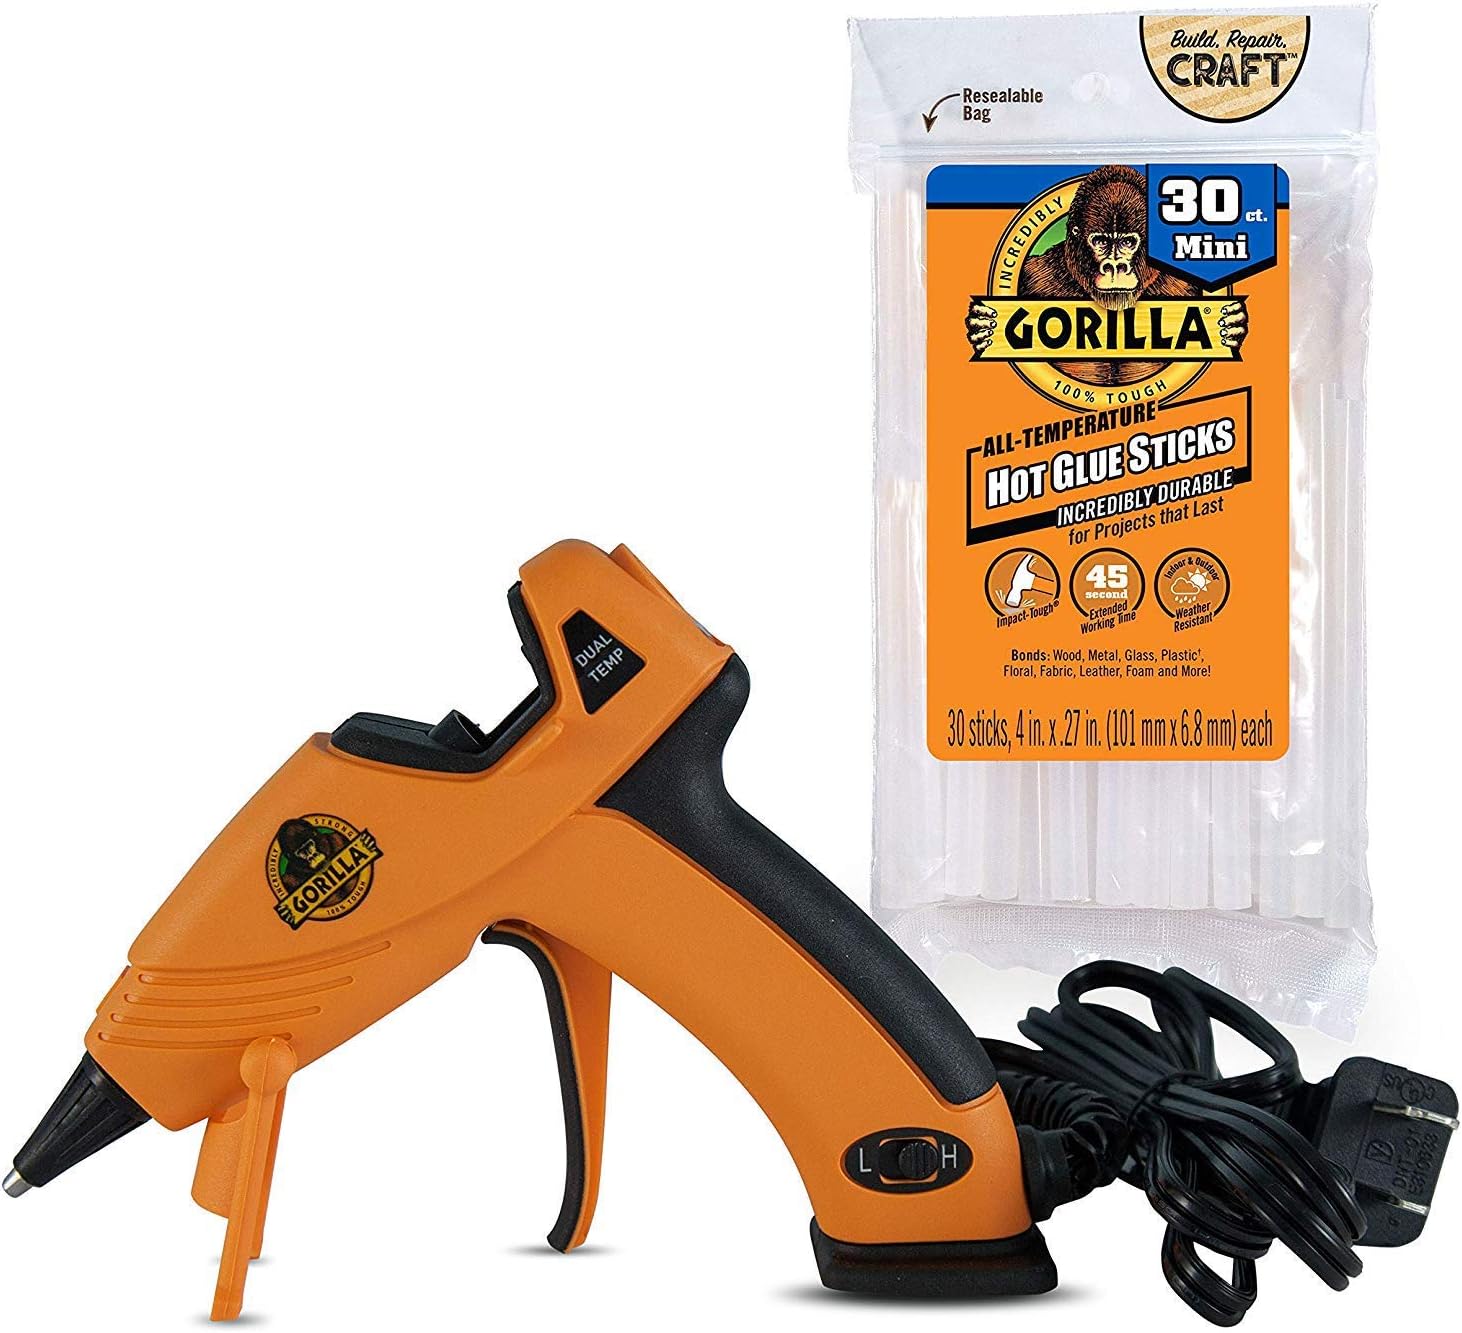 Gorilla glue kit with glue sticks and hot glue gun.